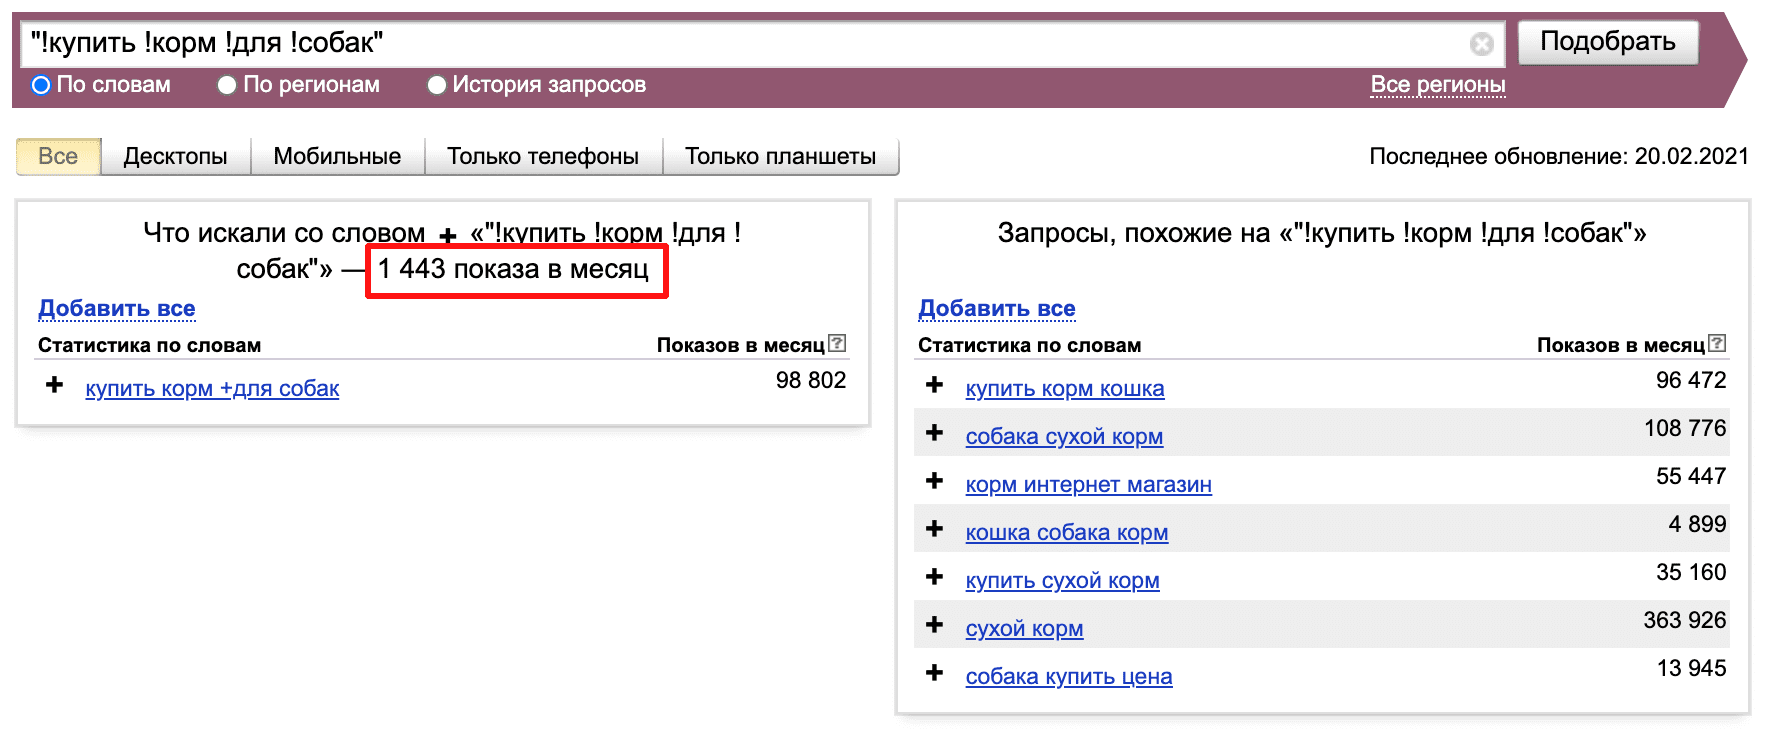 Проверить статистику фразы можно с помощью сервиса wordstat.yandex.ru.